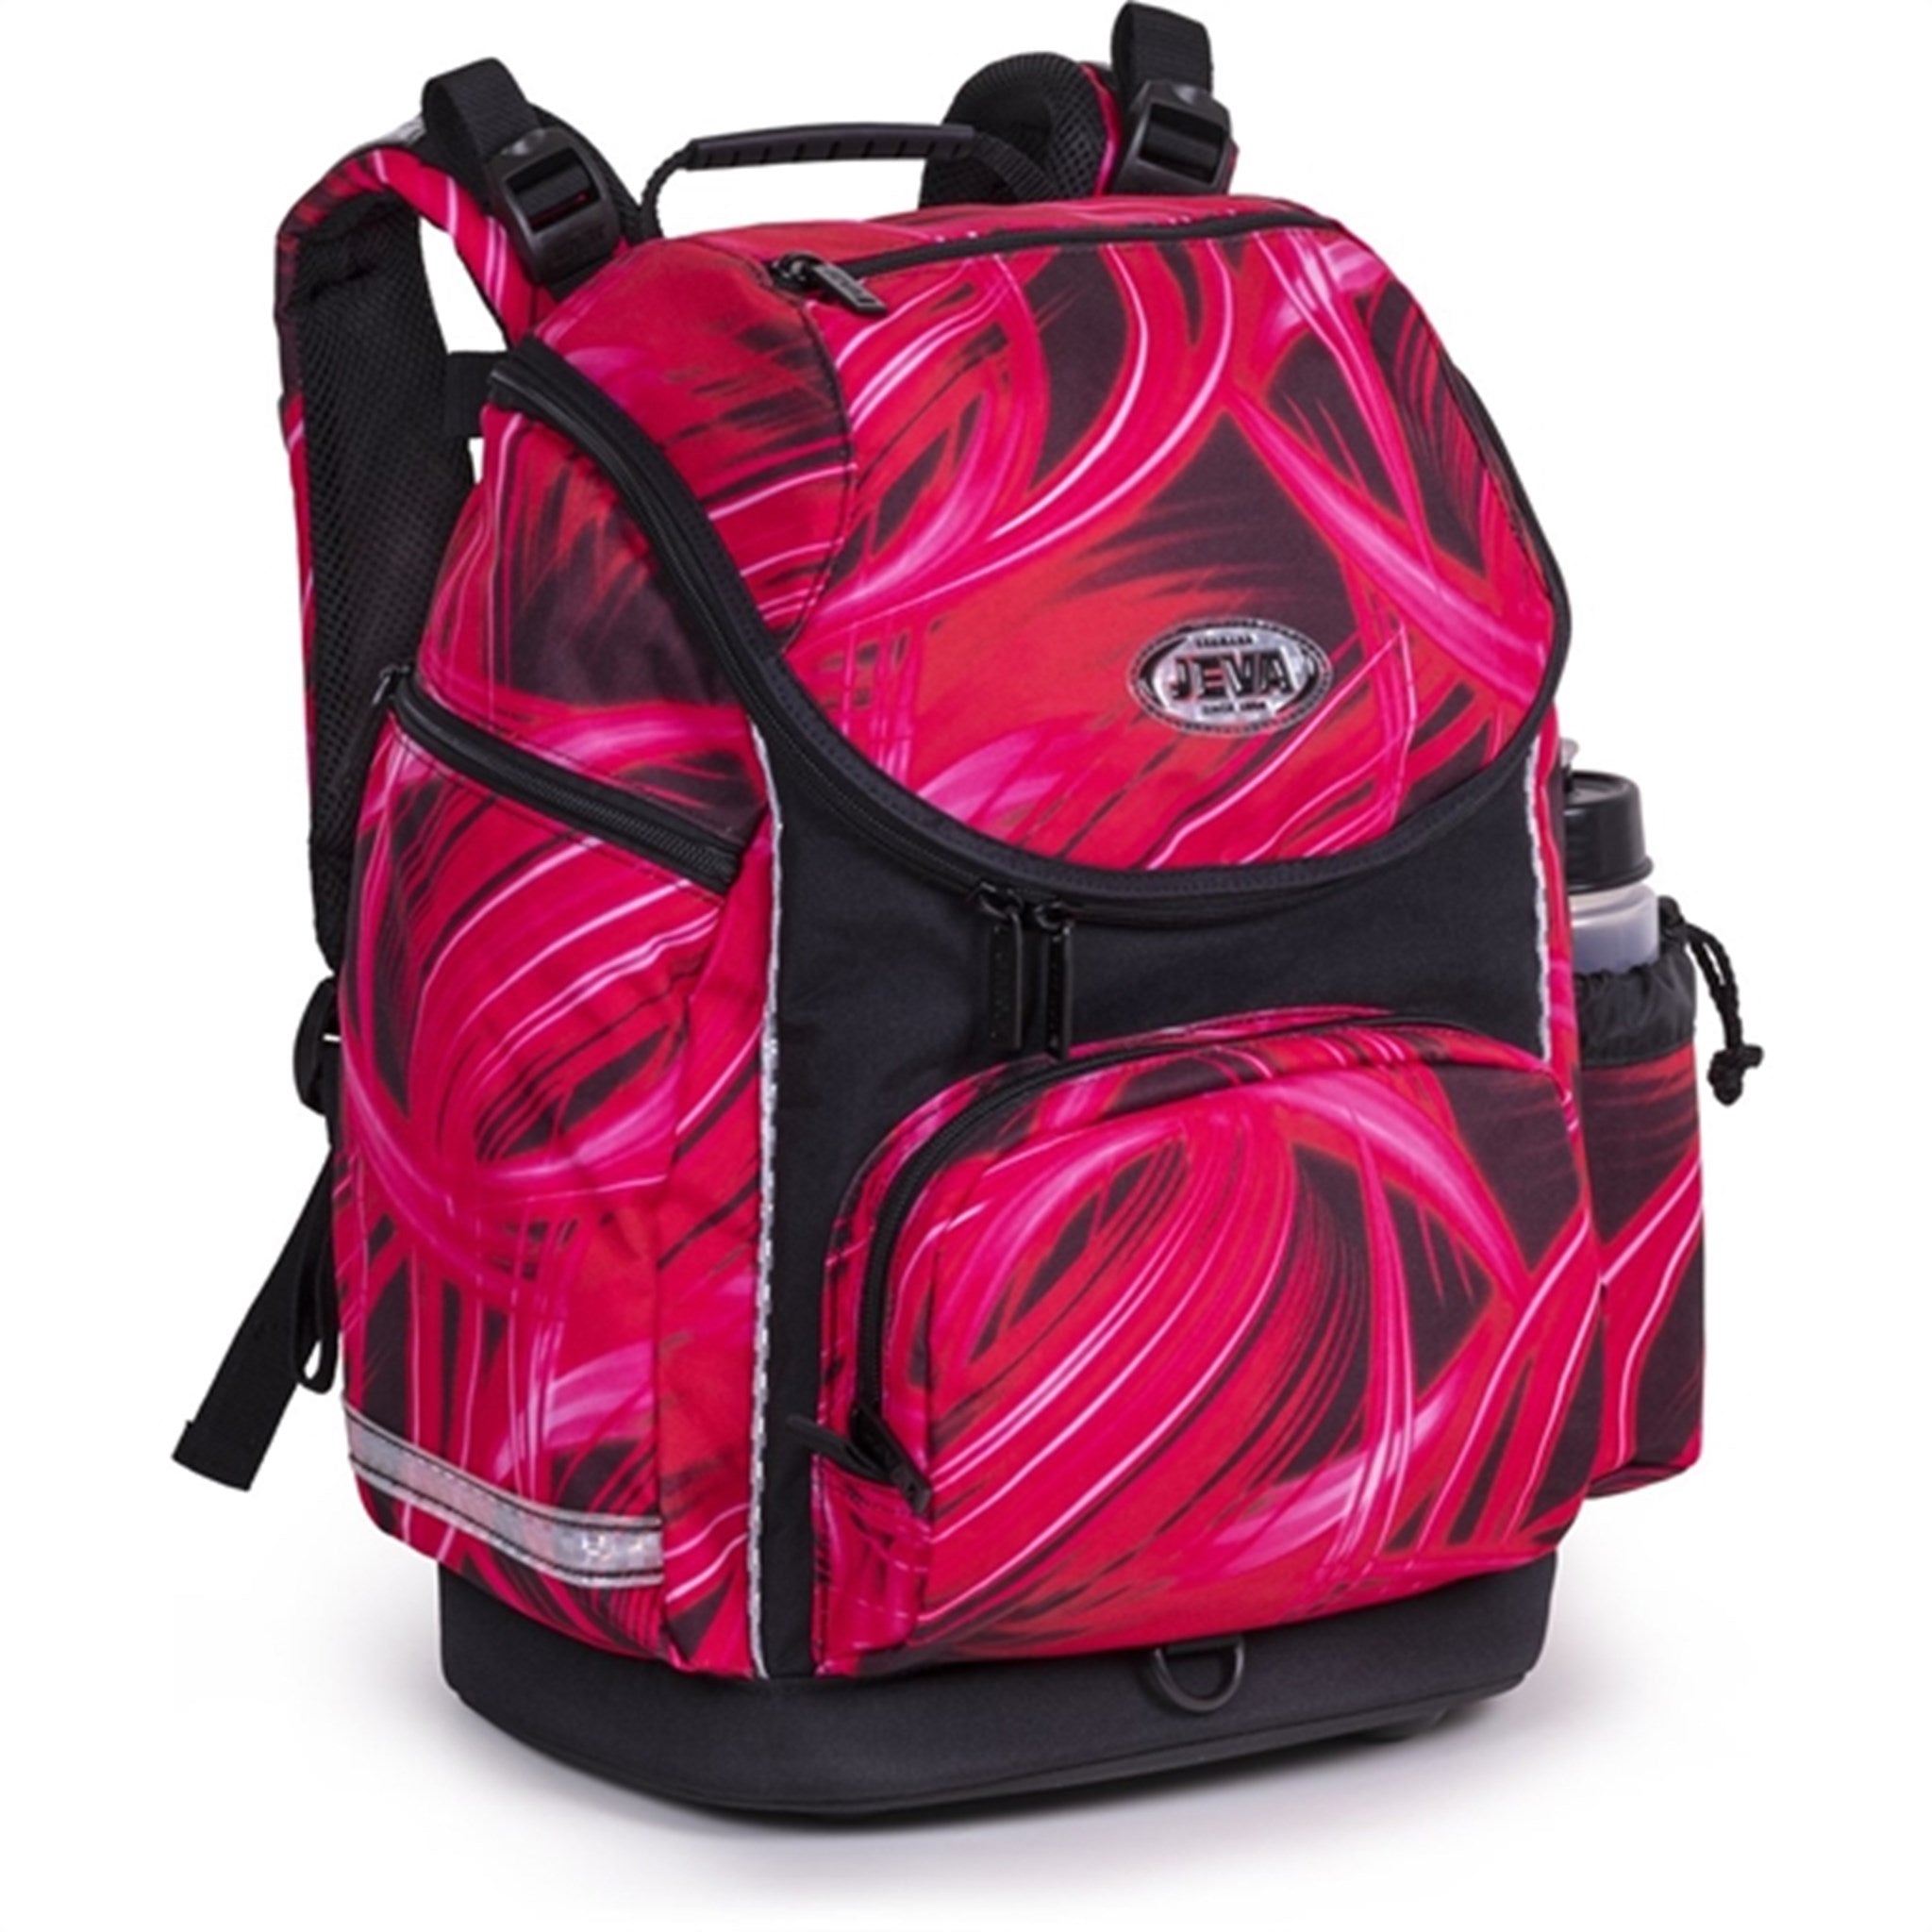 JEVA School Bag Pink Lightning 5